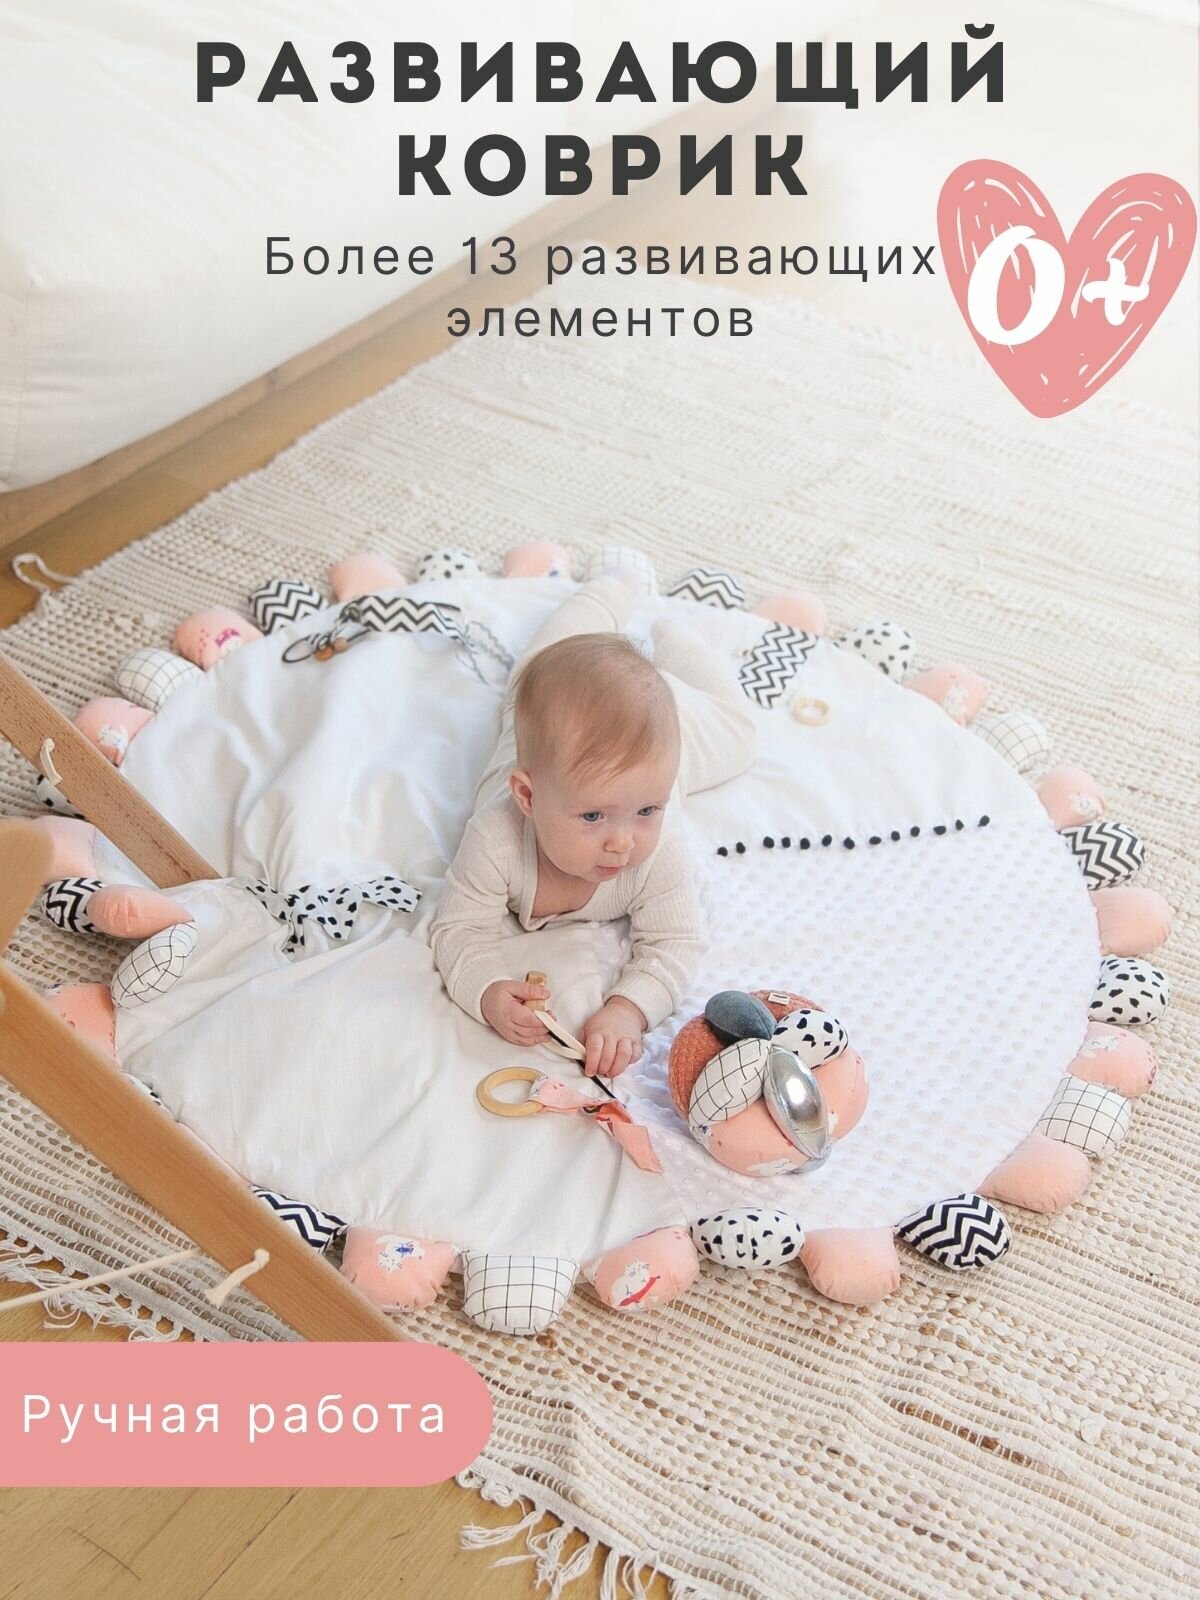 Детский развивающий коврик "Пыльно-розовый"/ сенсорный развивающий коврик монтессори для малышей / для новорожденных